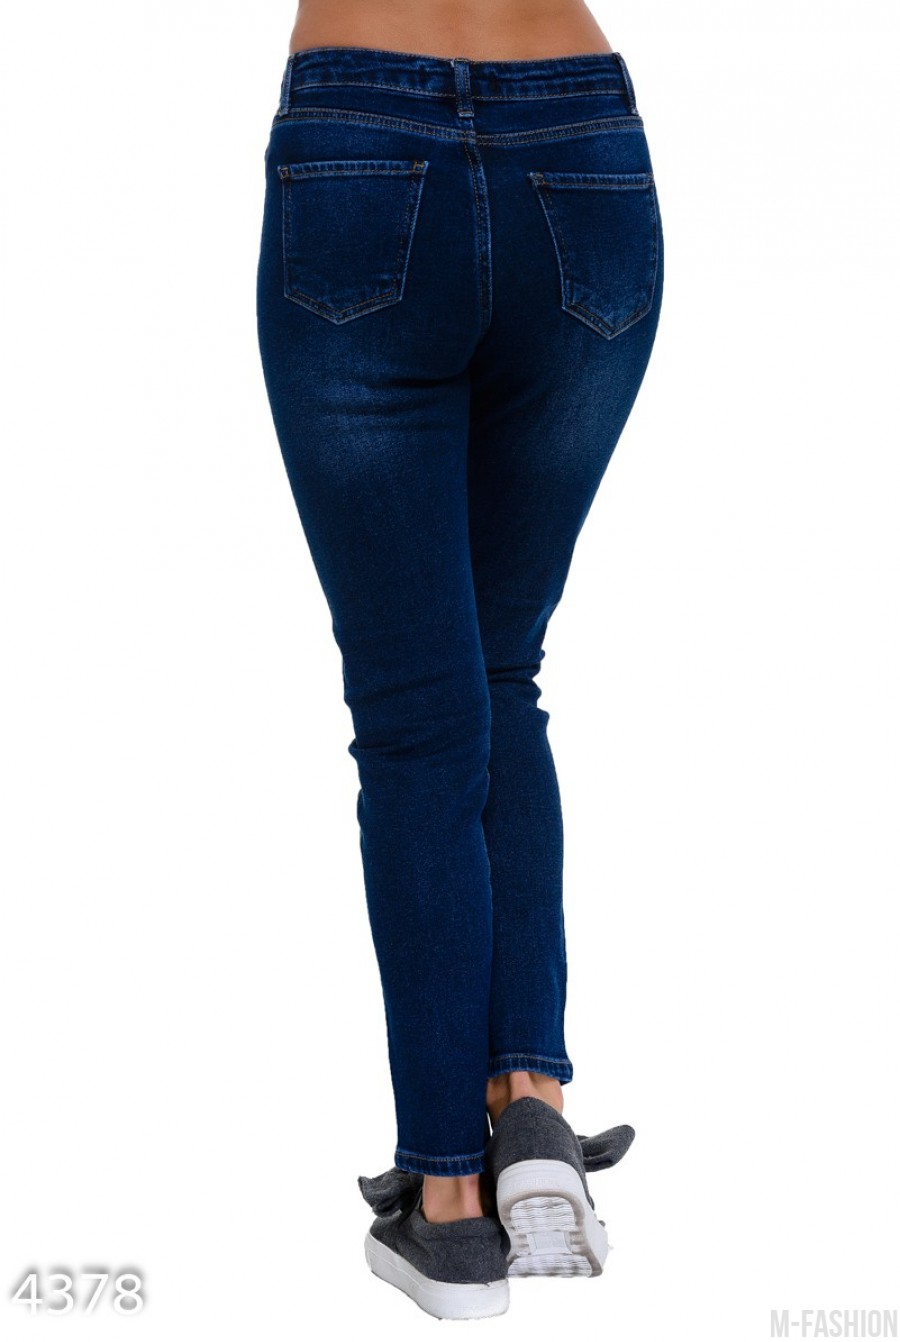 Синие классические джинсы покрытые до колен серебристой краской- Фото 4